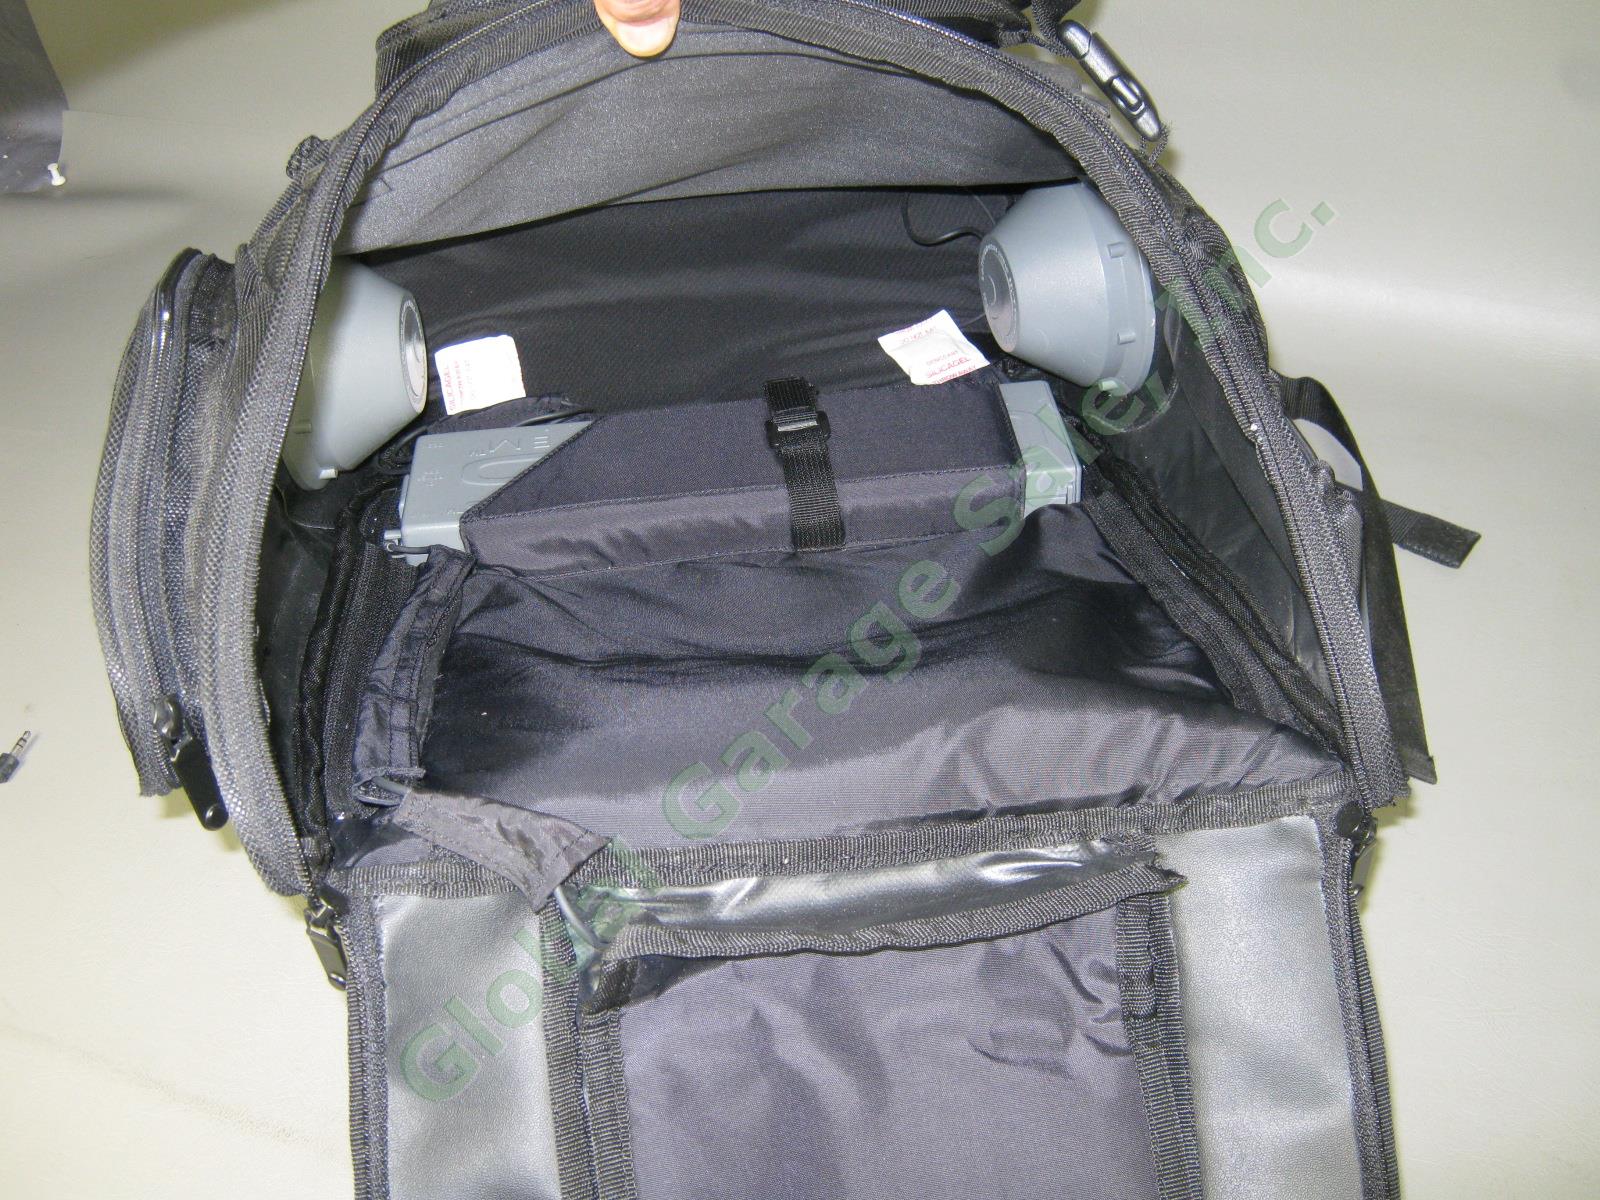 NOS Osiris G-Bag Metatron 2100 Backpack Skate Pack w/ Stereo Speakers + Amp NR! 10